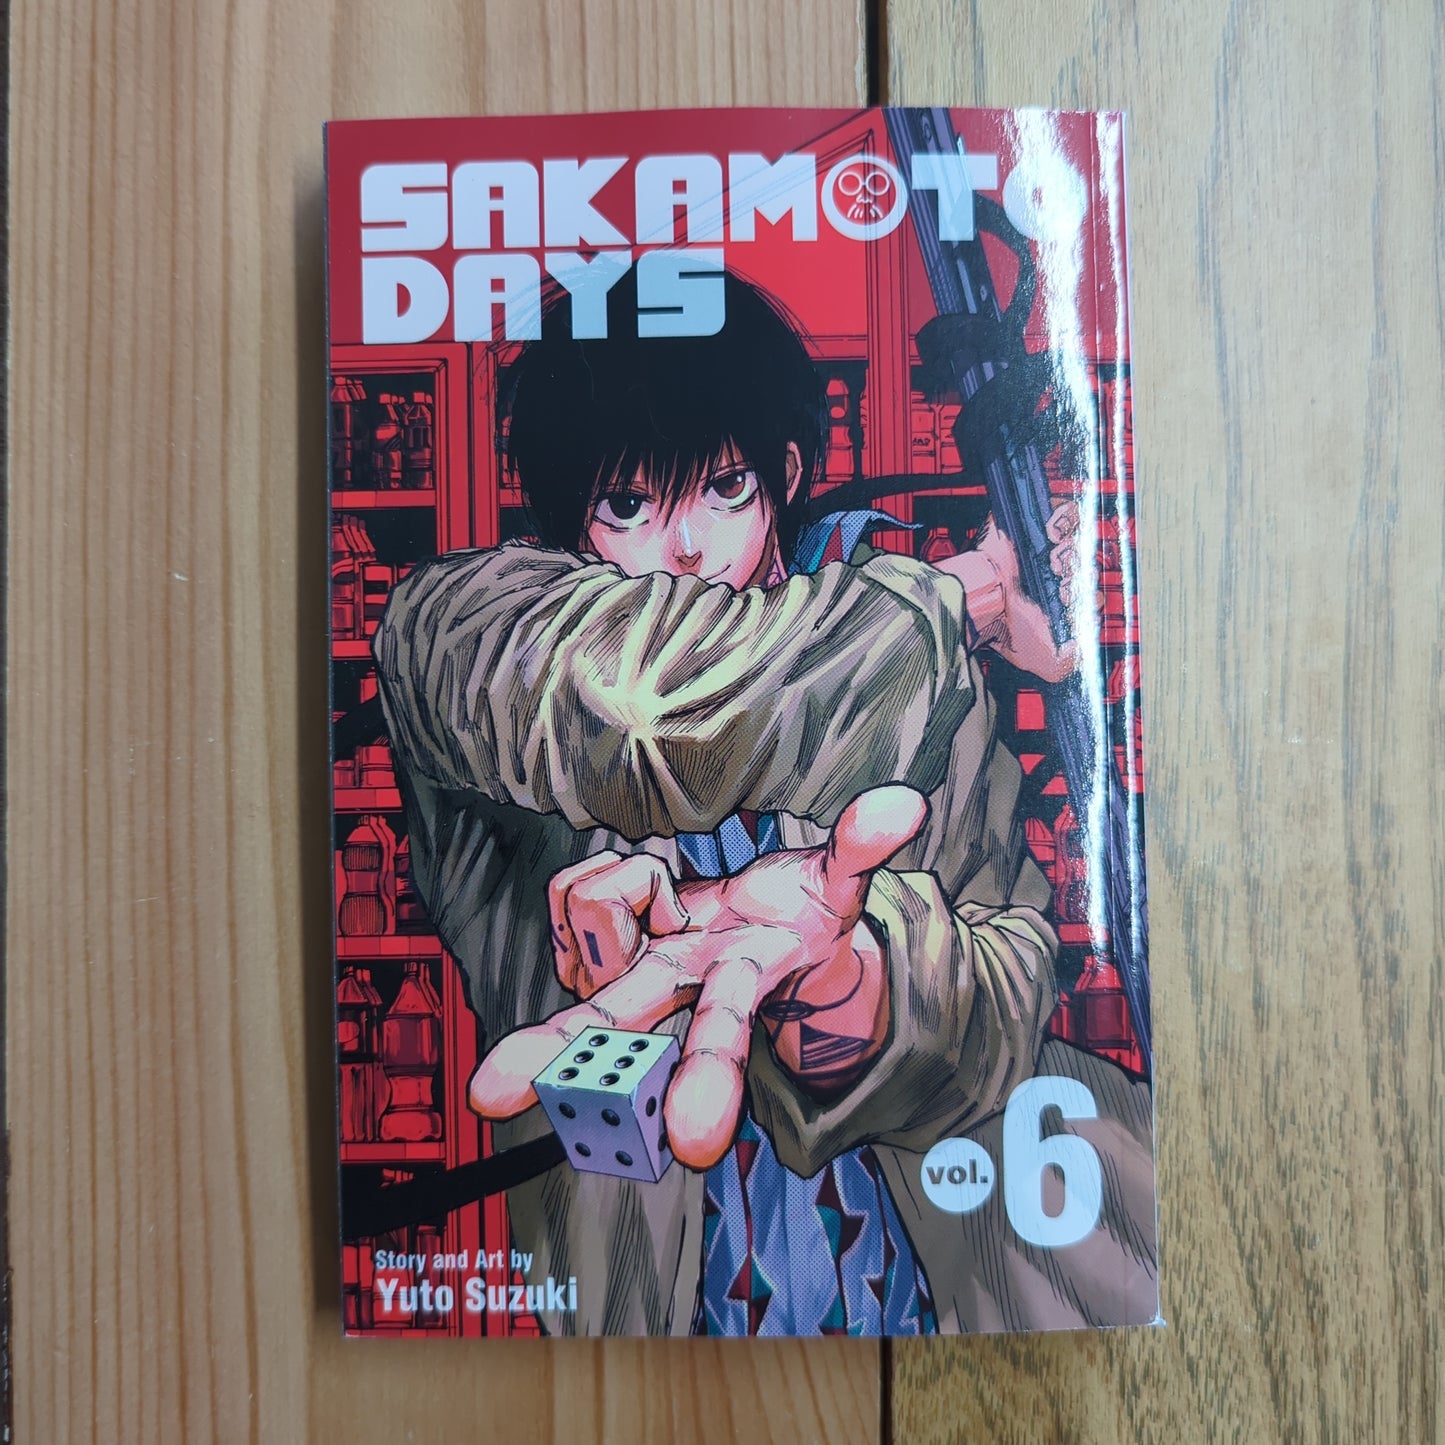 Sakamoto Days Vol 6